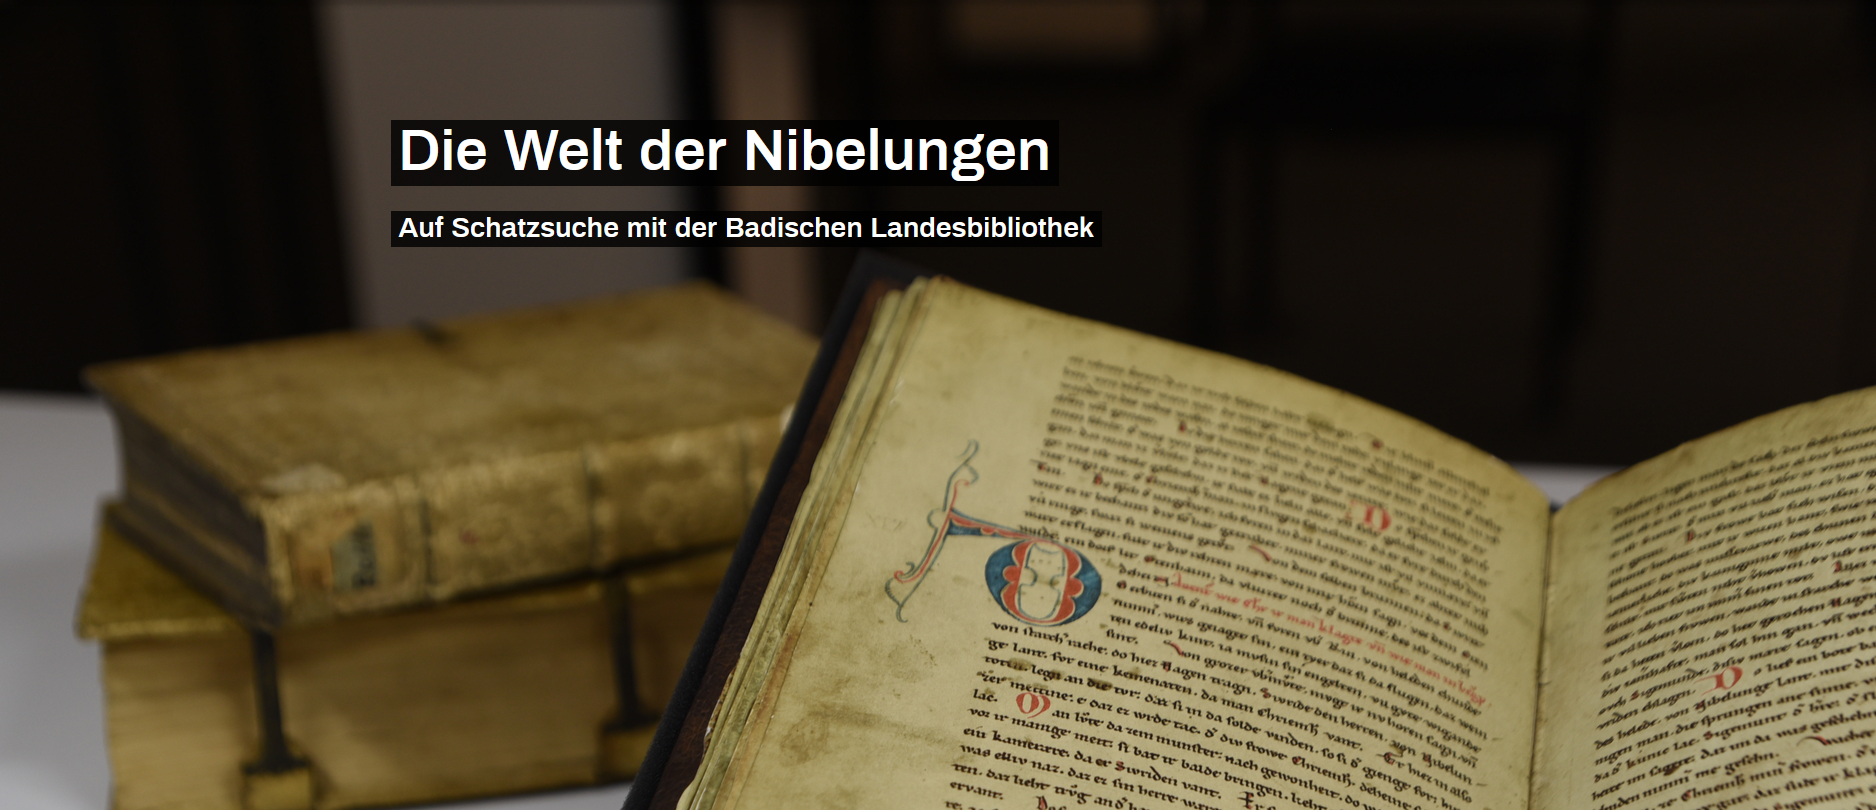 Zu sehen ist die Einstiegsseite zur Virtuellen Ausstellung Nibelungenlied.